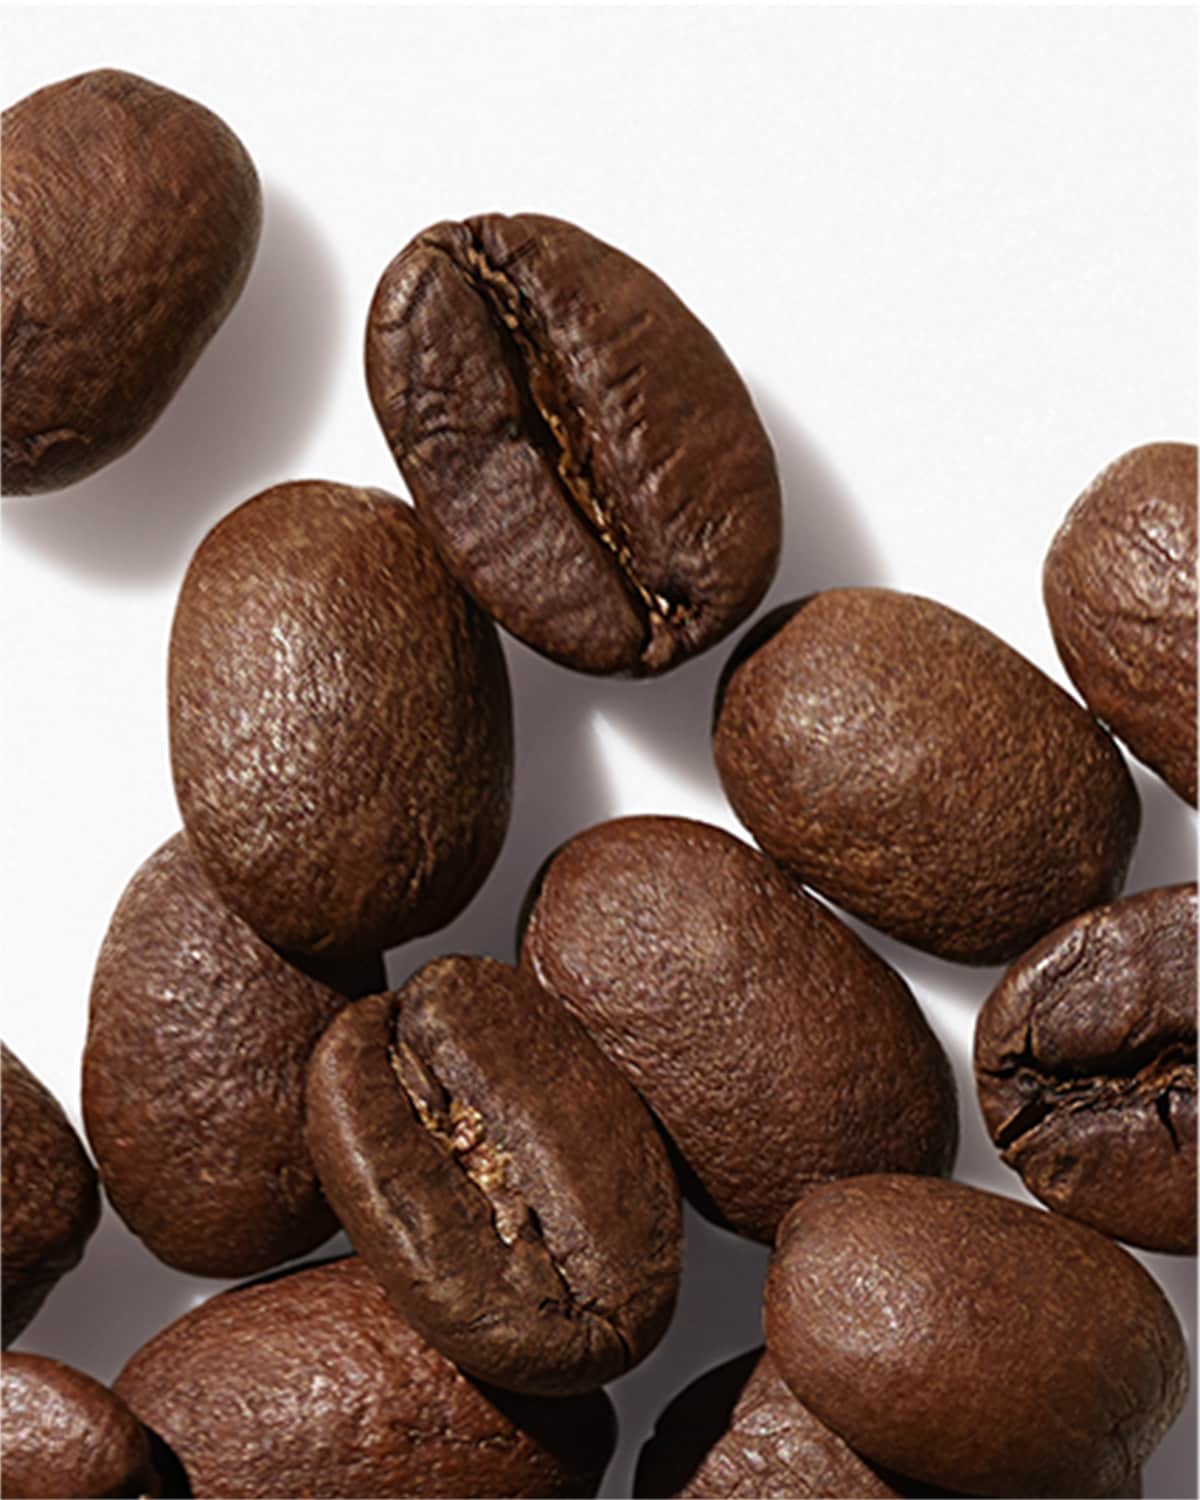 Kofeina - składnik płynu złuszczającego Anti-Blemish Solutions Claryfying Lotion